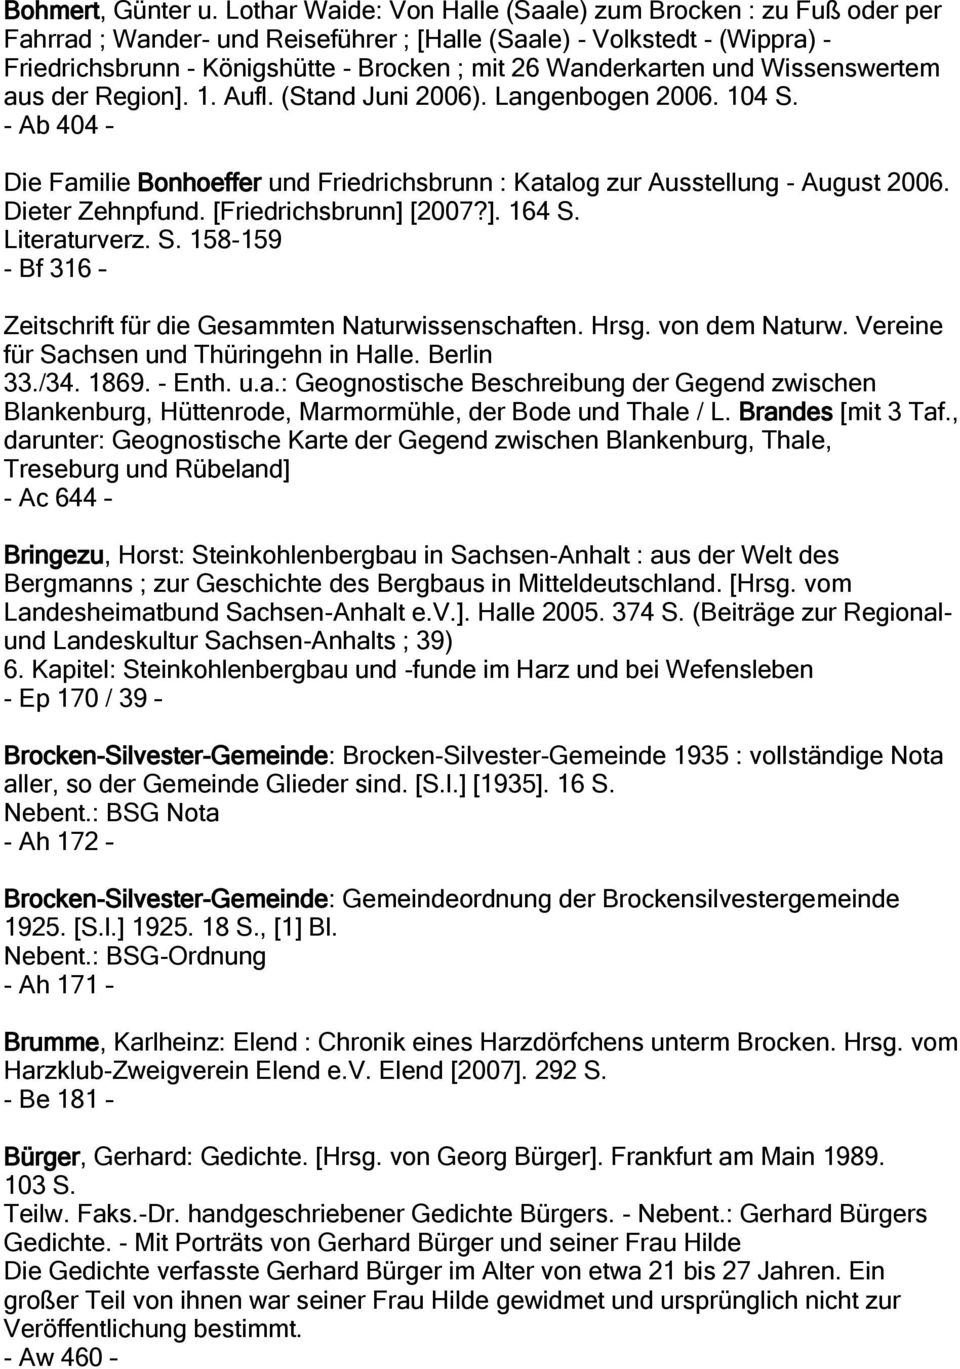 und Wissenswertem aus der Region]. 1. Aufl. (Stand Juni 2006). Langenbogen 2006. 104 S. - Ab 404 Die Familie Bonhoeffer und Friedrichsbrunn : Katalog zur Ausstellung - August 2006. Dieter Zehnpfund.